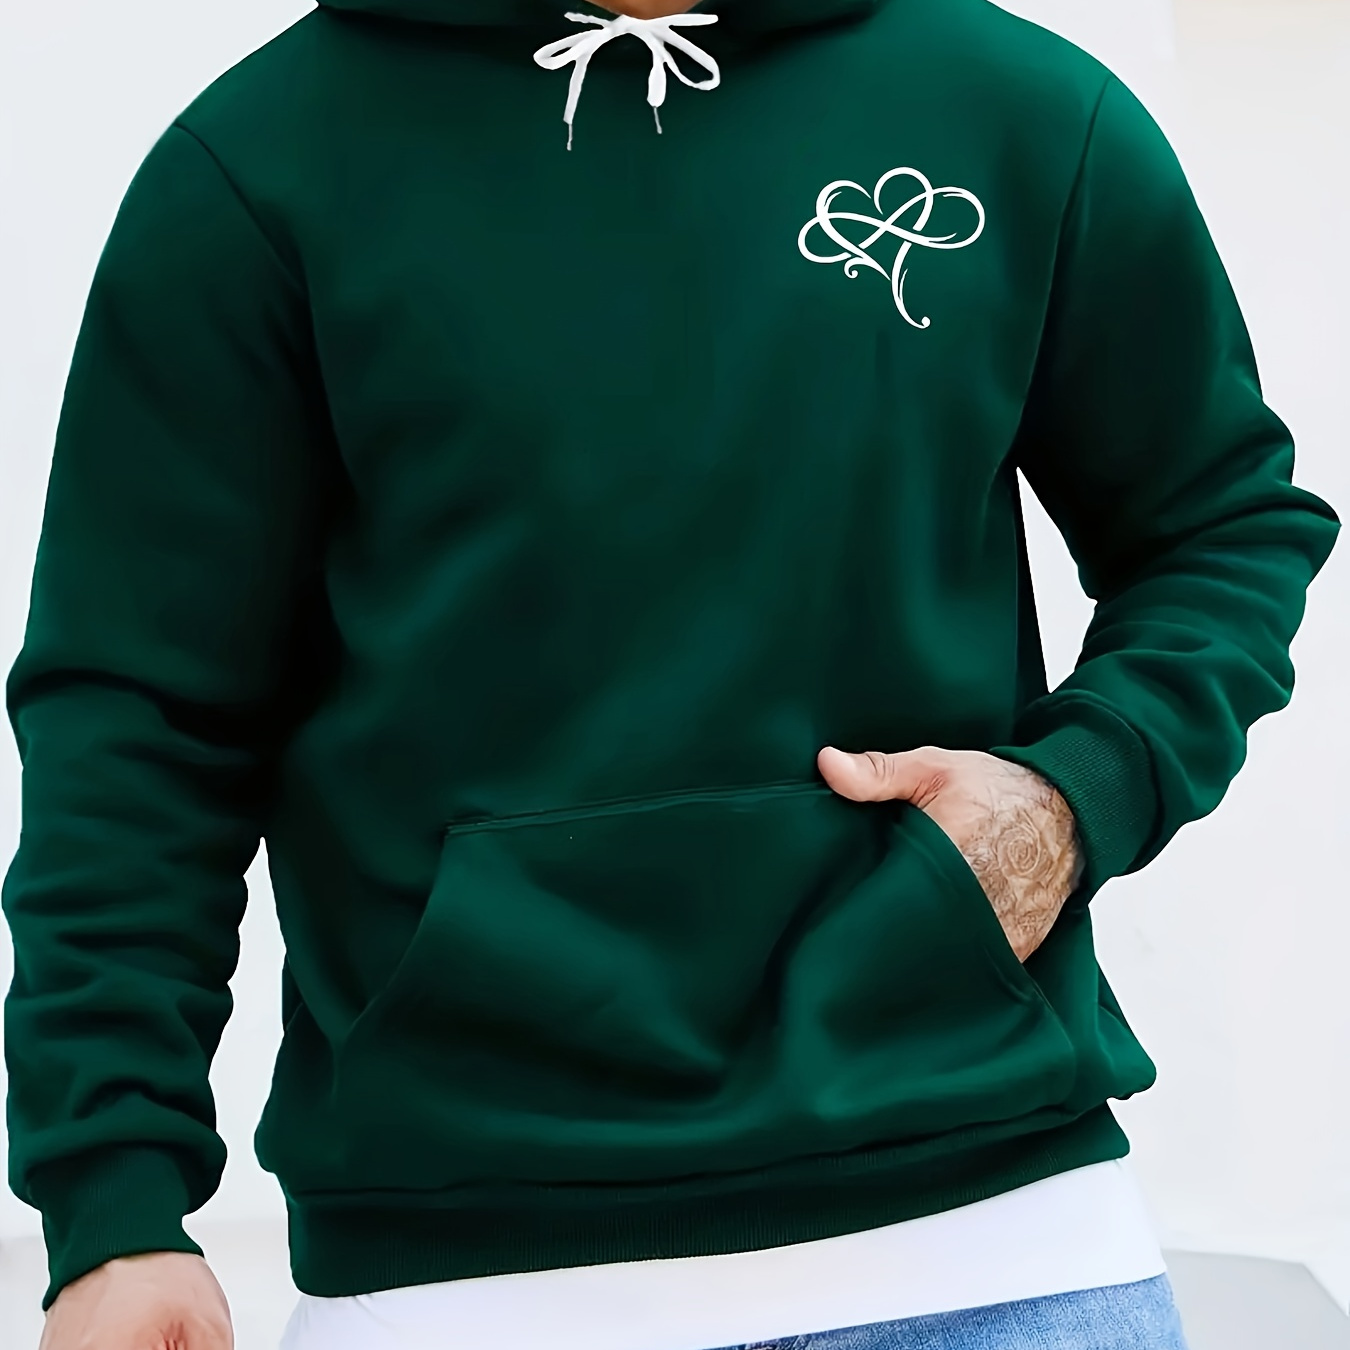 

Love Heart Print Kangaroo Pocket Hoodie, Casual Long Sleeve Hoodies Pullover Sweatshirt, Men's Clothing, For Fall Winter